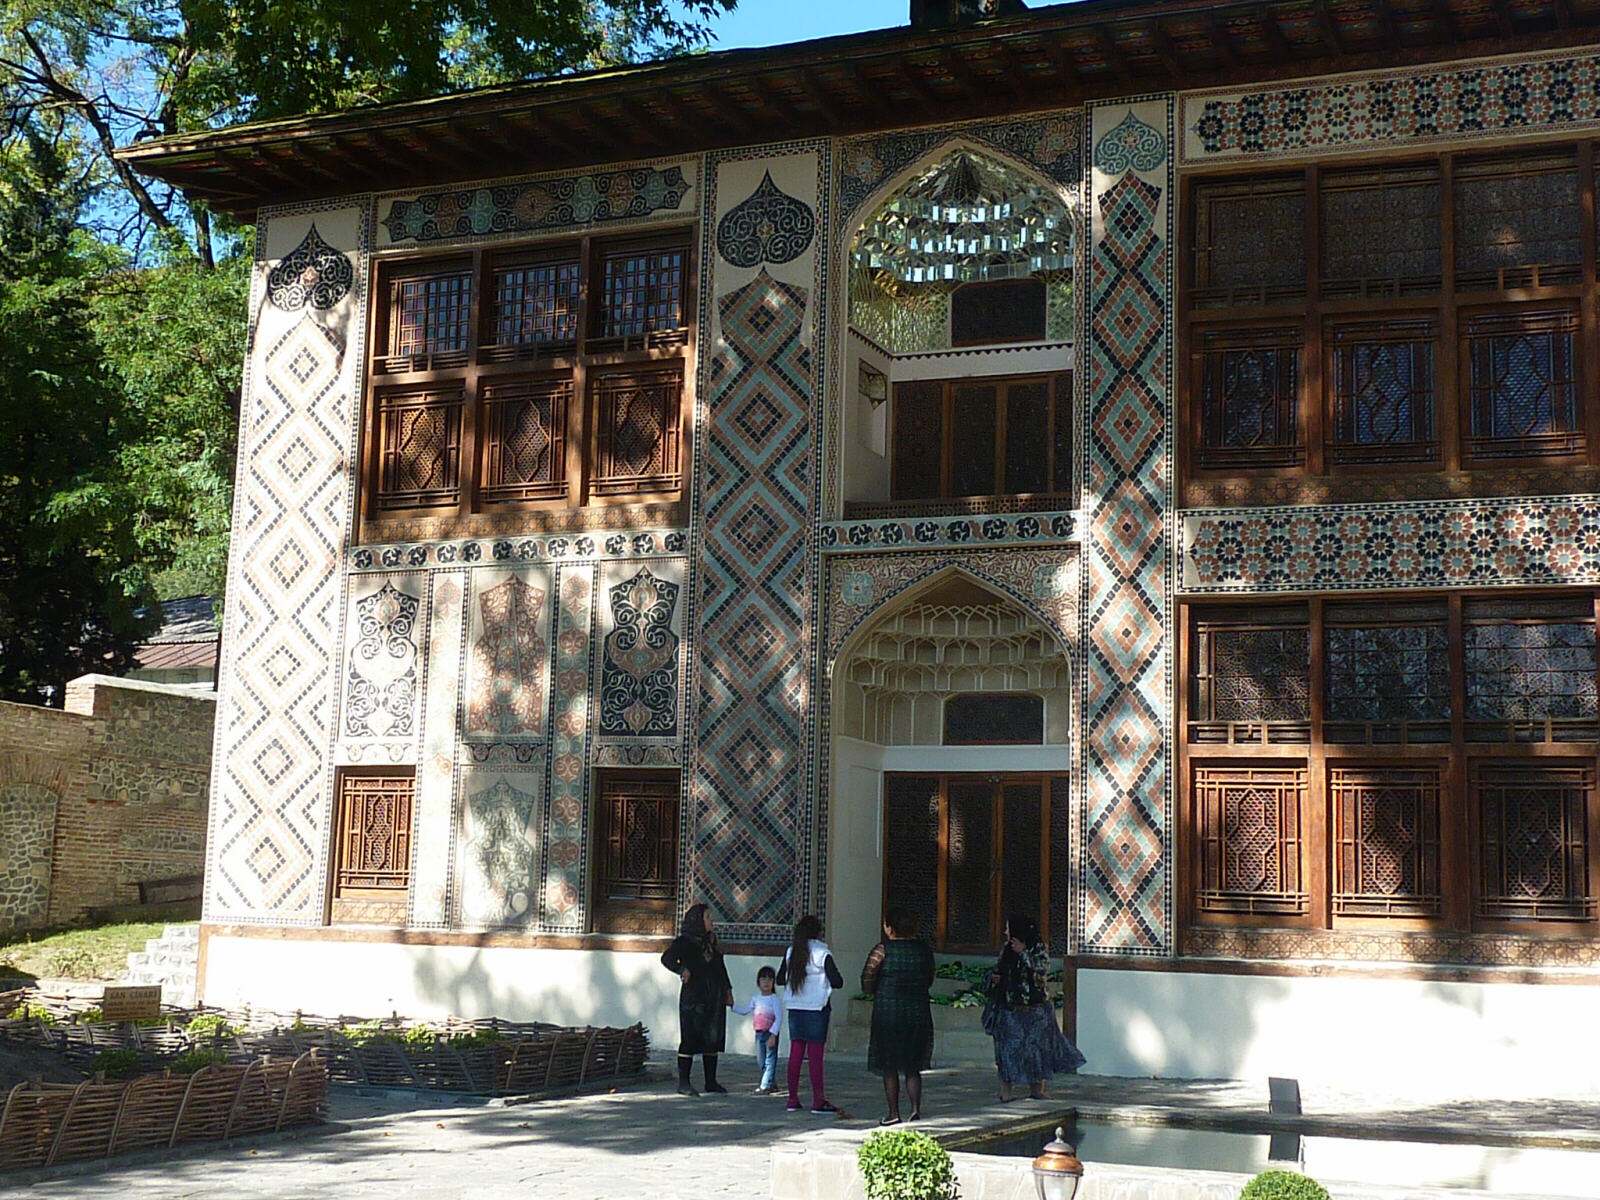 The Khan's palace in Sheki, Azerbaijan